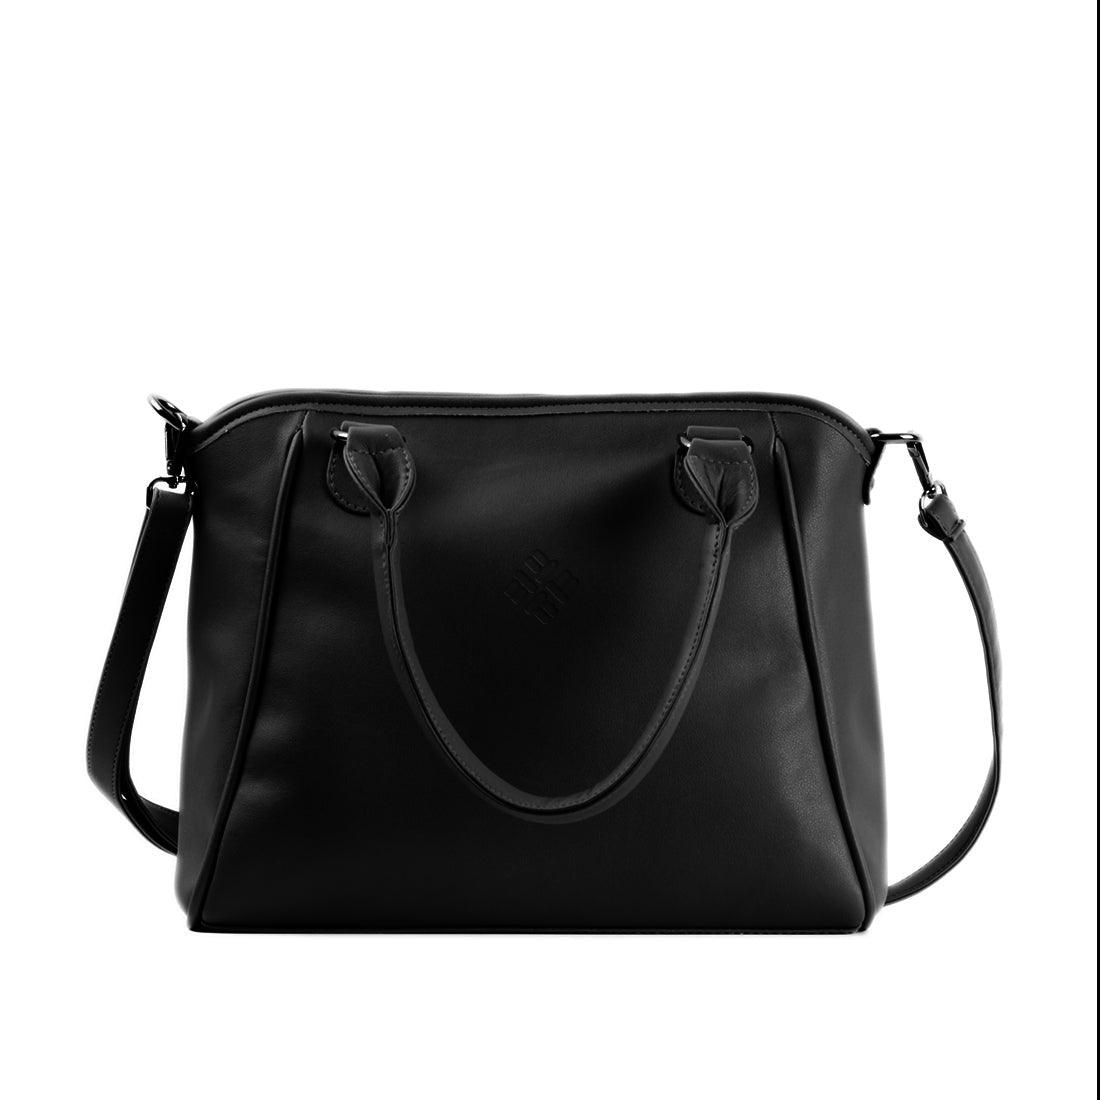 Black Ladies Handbag Pattern - CANVAEGYPT